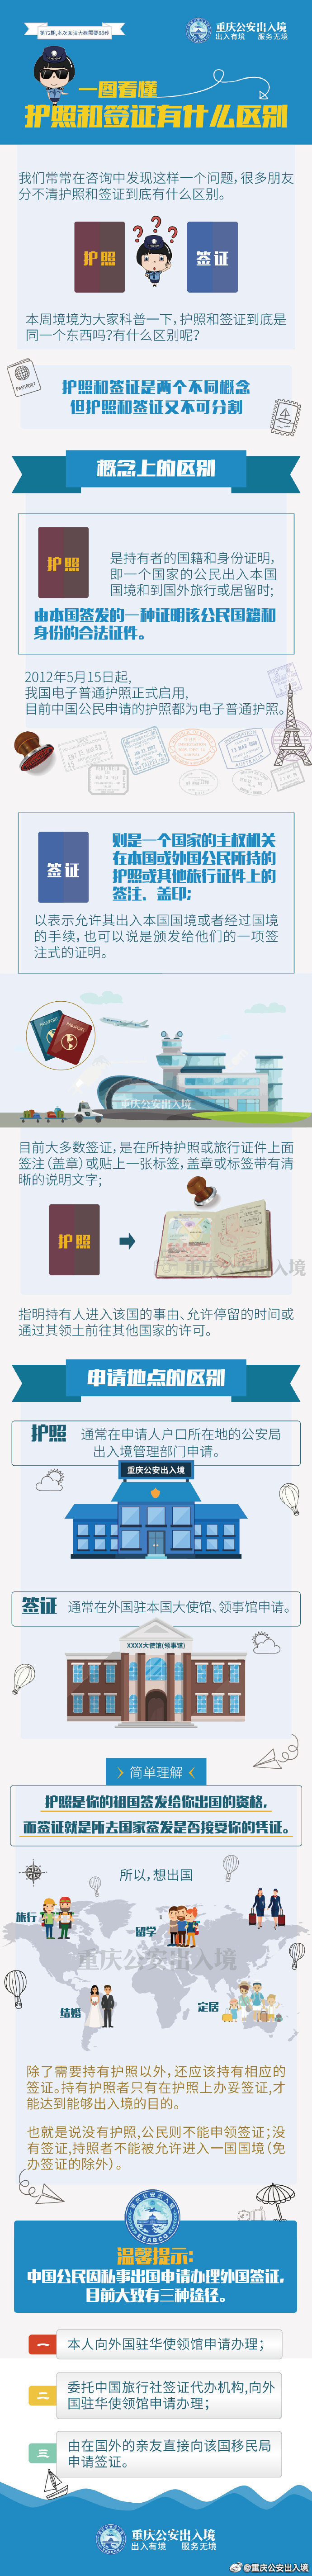 外国护照怎么看懂图解图片